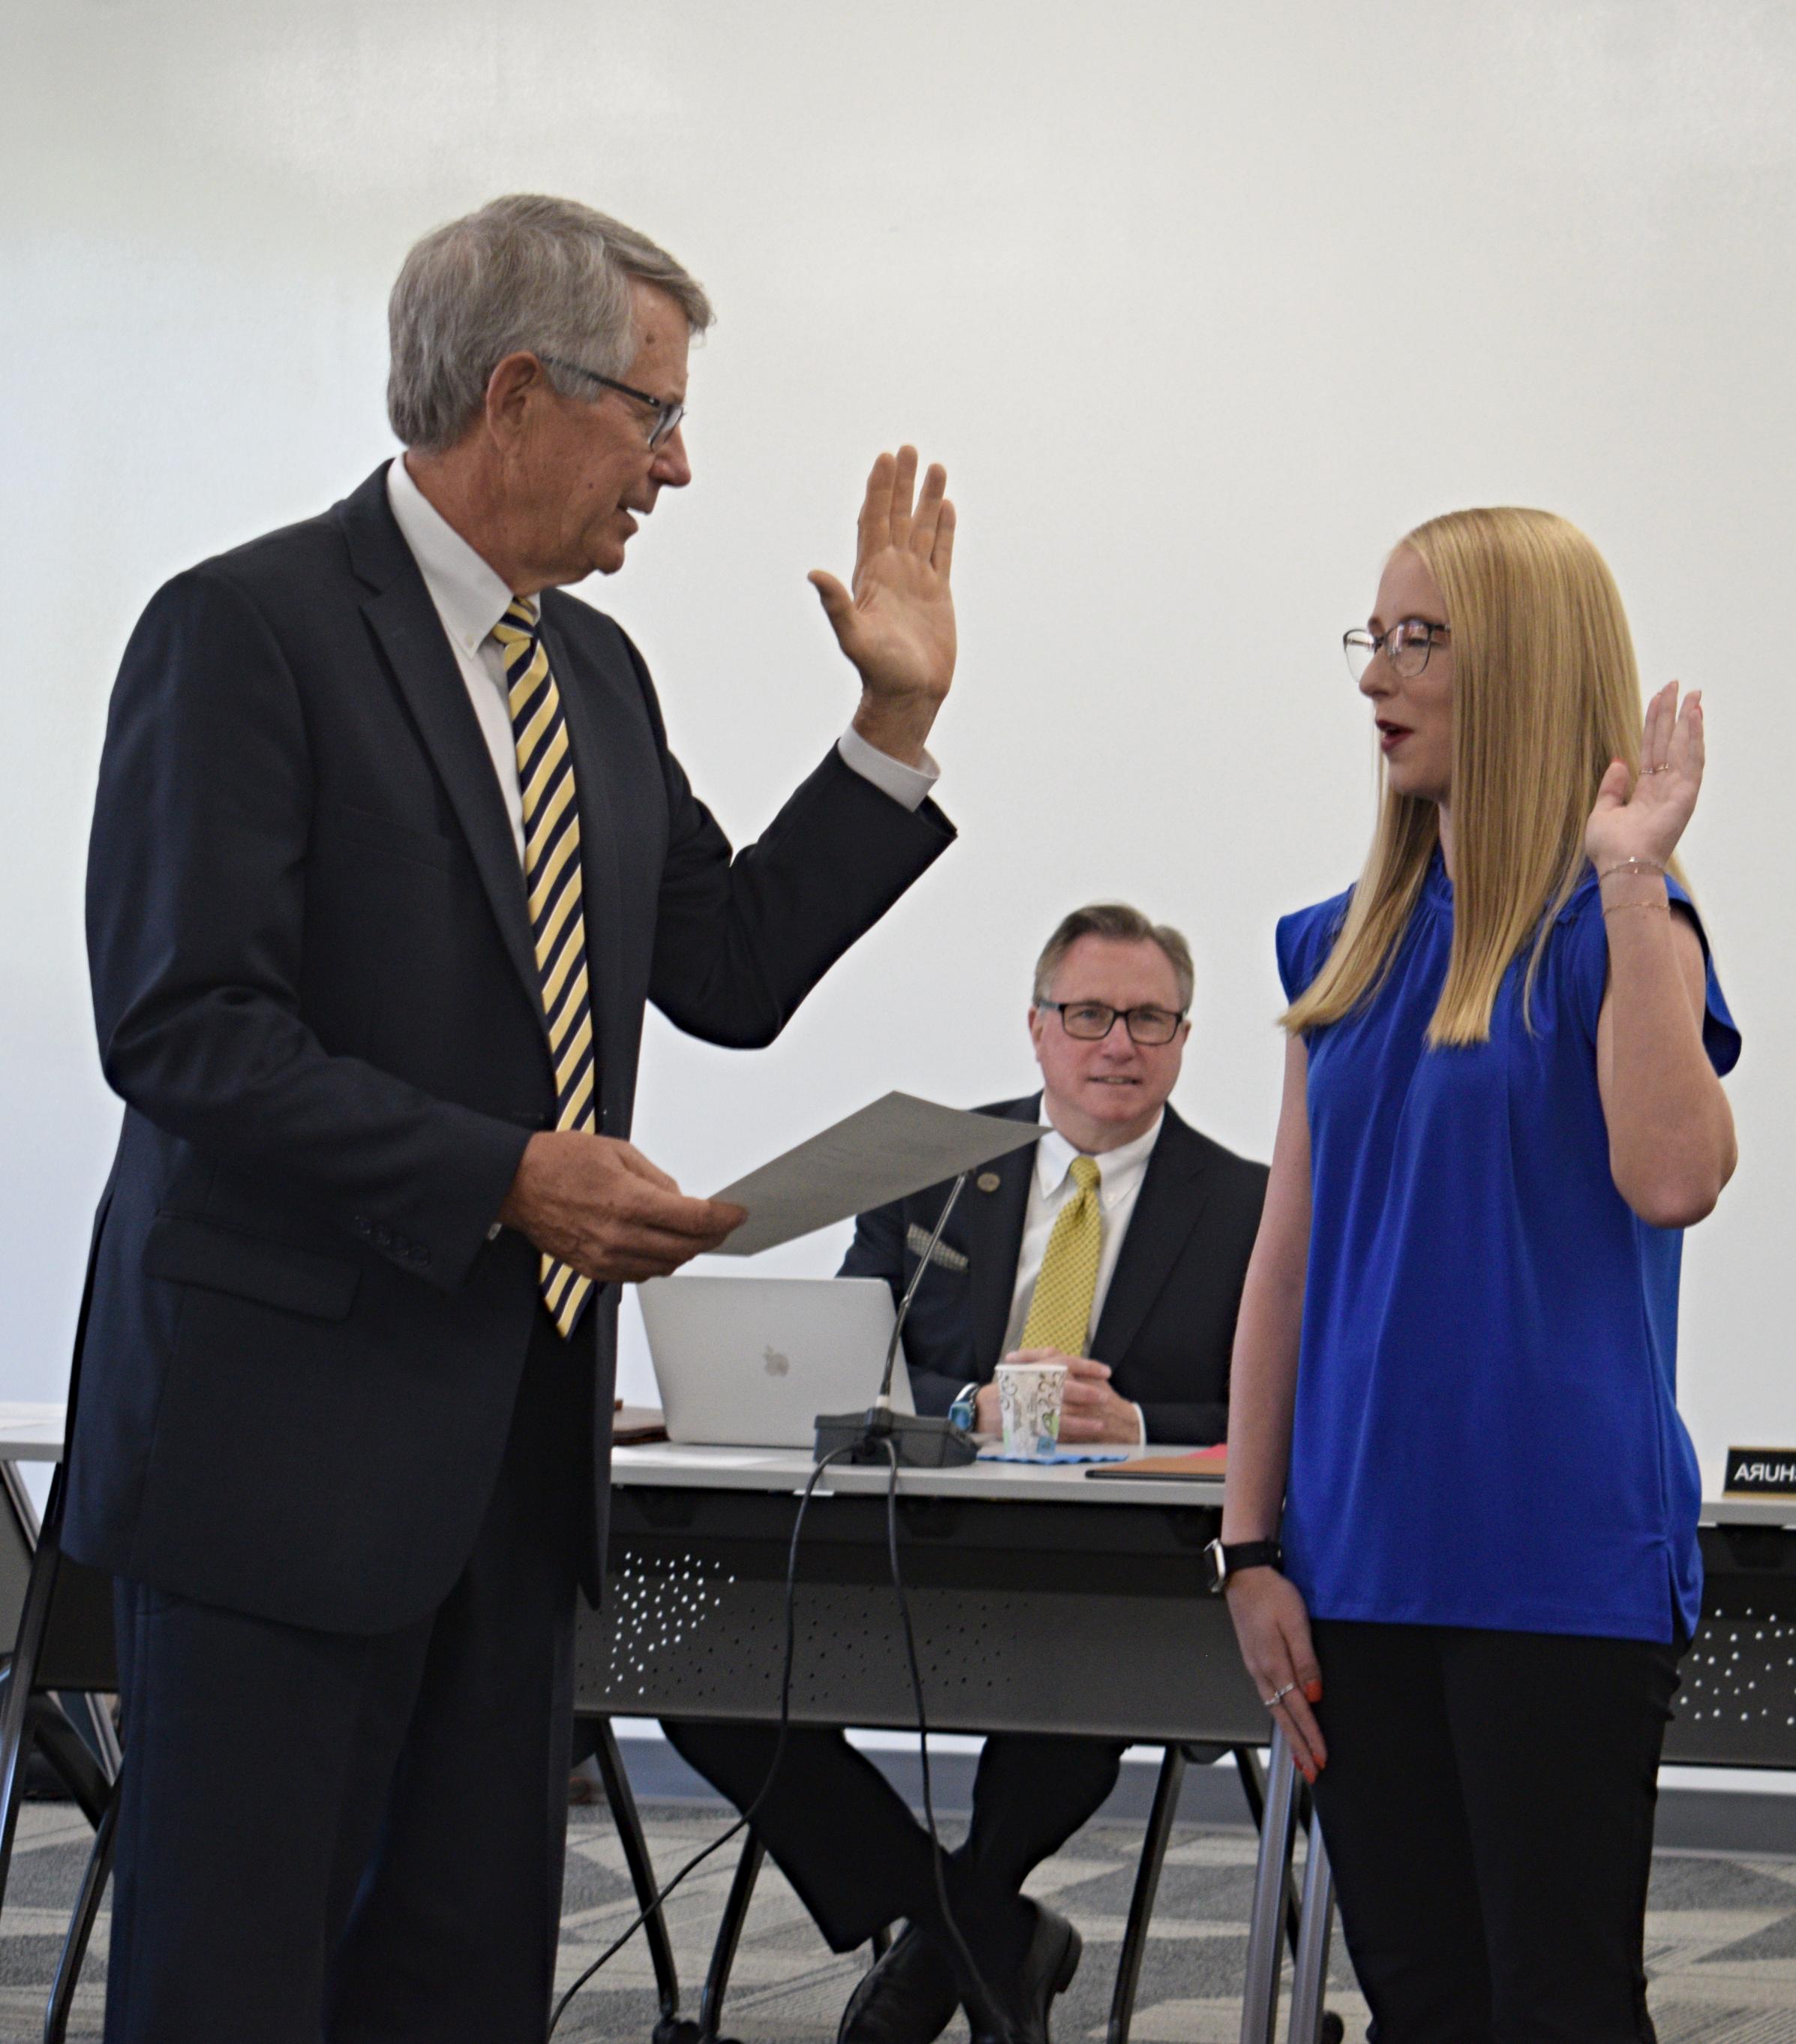 学生受托人盖尔·鲍在大学律师布伦特·斯塔基的陪同下宣誓就职时举起了手.